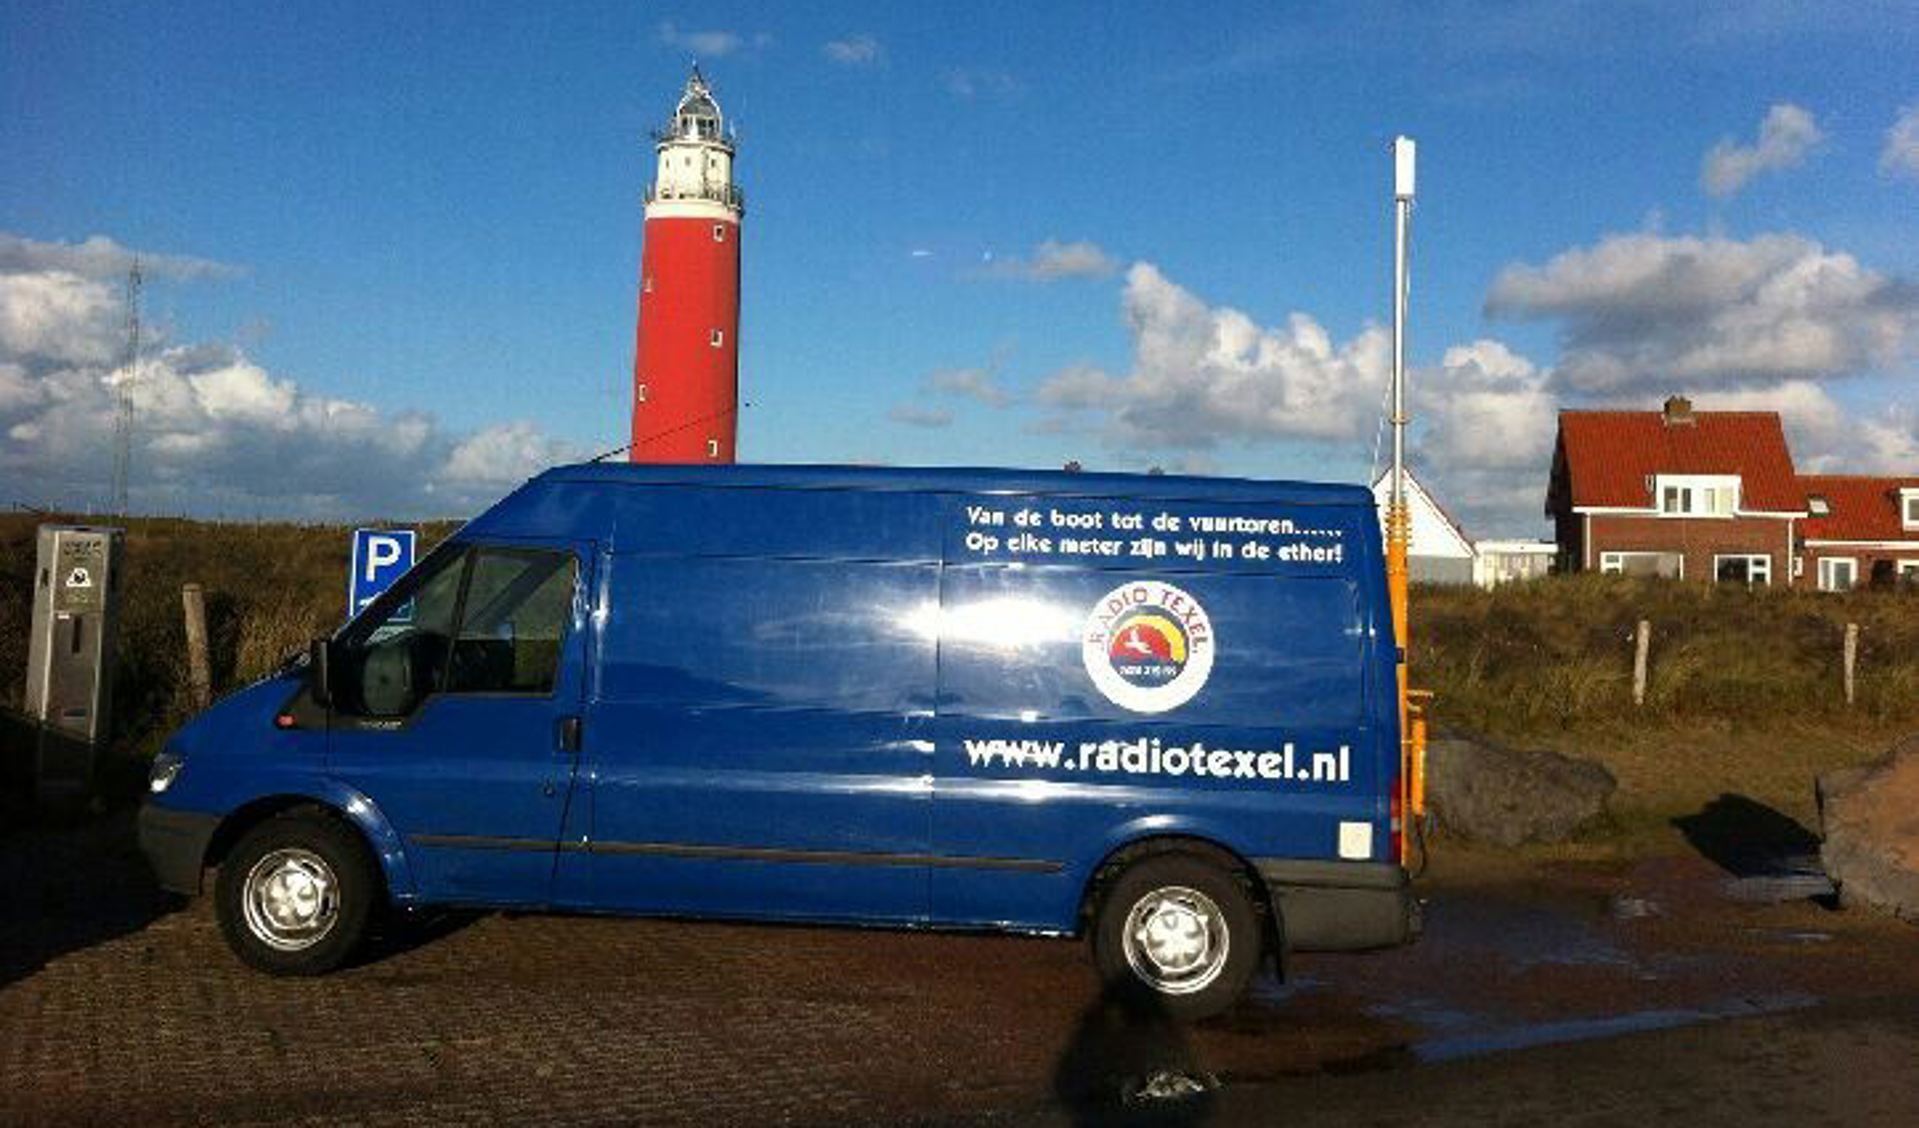 De nieuwe reportagewagen van Radio Texel.